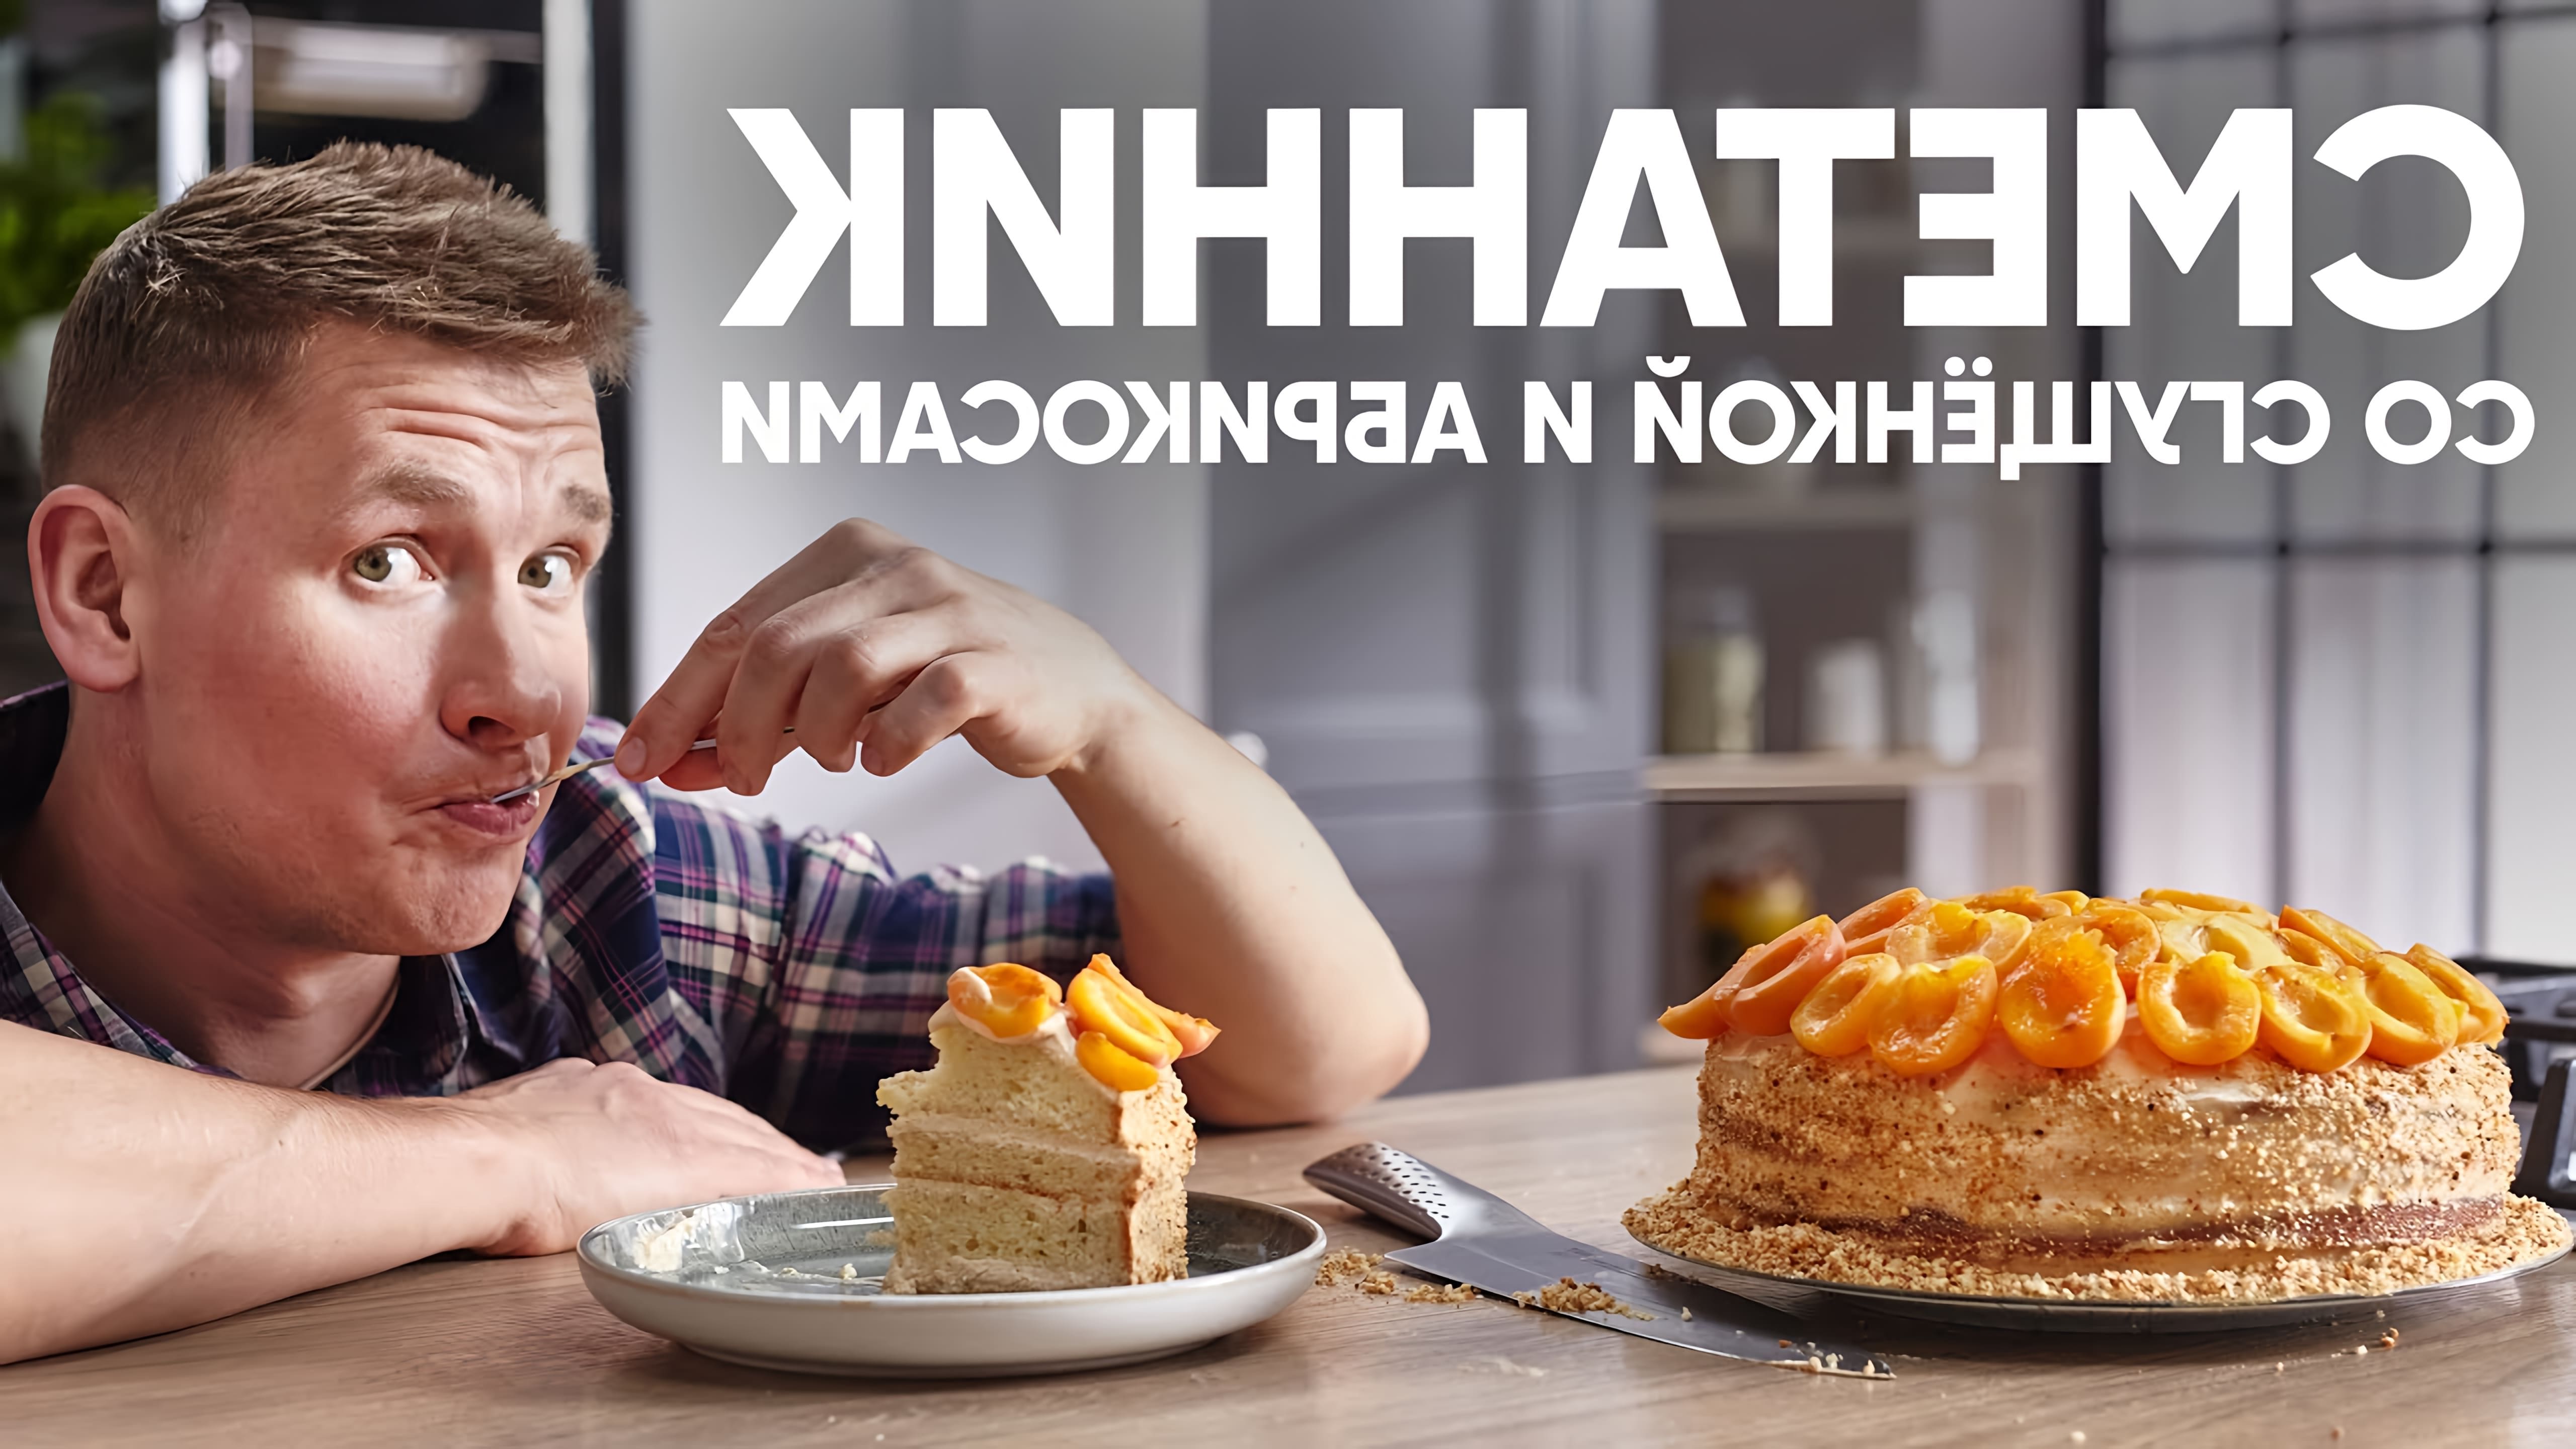 В этом видео демонстрируется рецепт приготовления торта сметанника с вареной сгущенкой и абрикосами